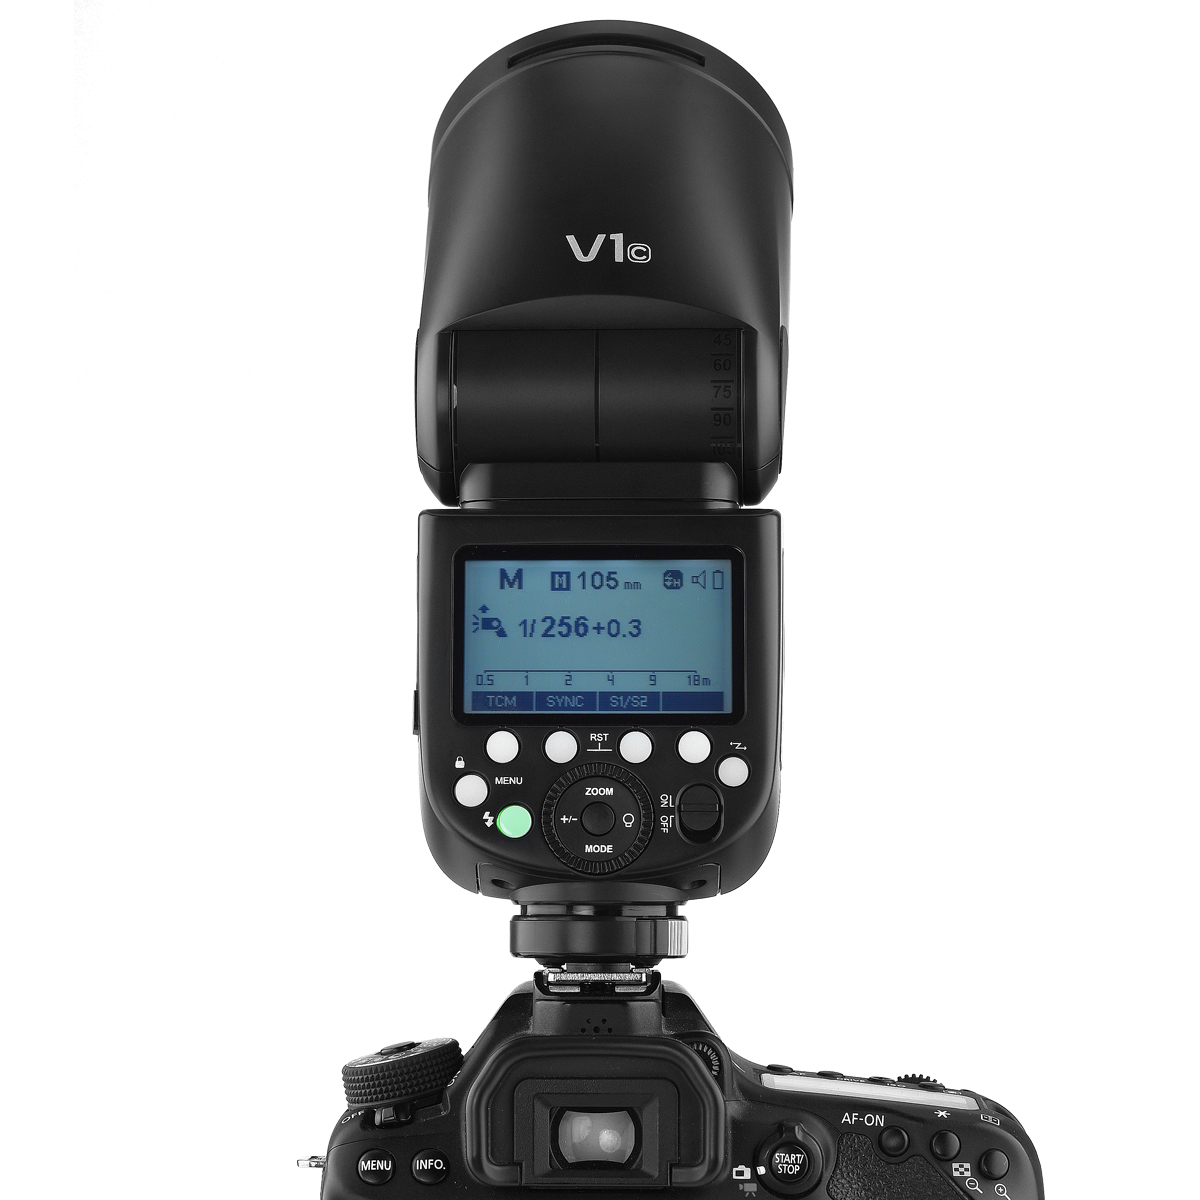 فلاش GODOX مدل V1c برای دوربین های کانن - نمایندگی فروش دوربین کانن